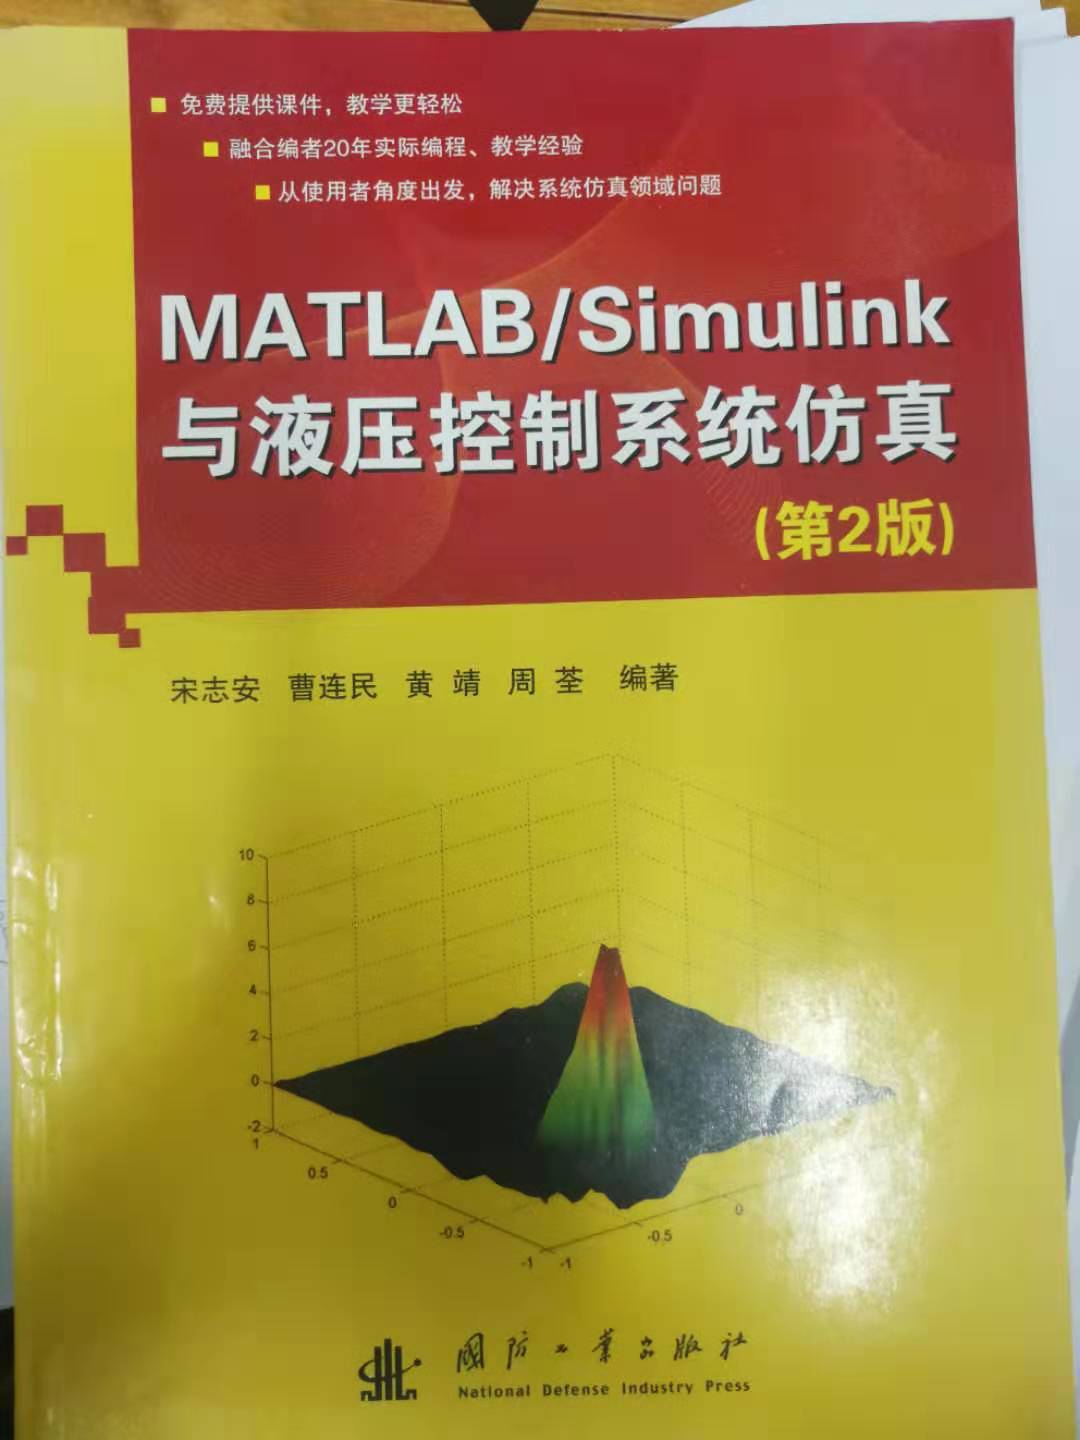 求《matlabsimulink与液压控制系统仿真》课件